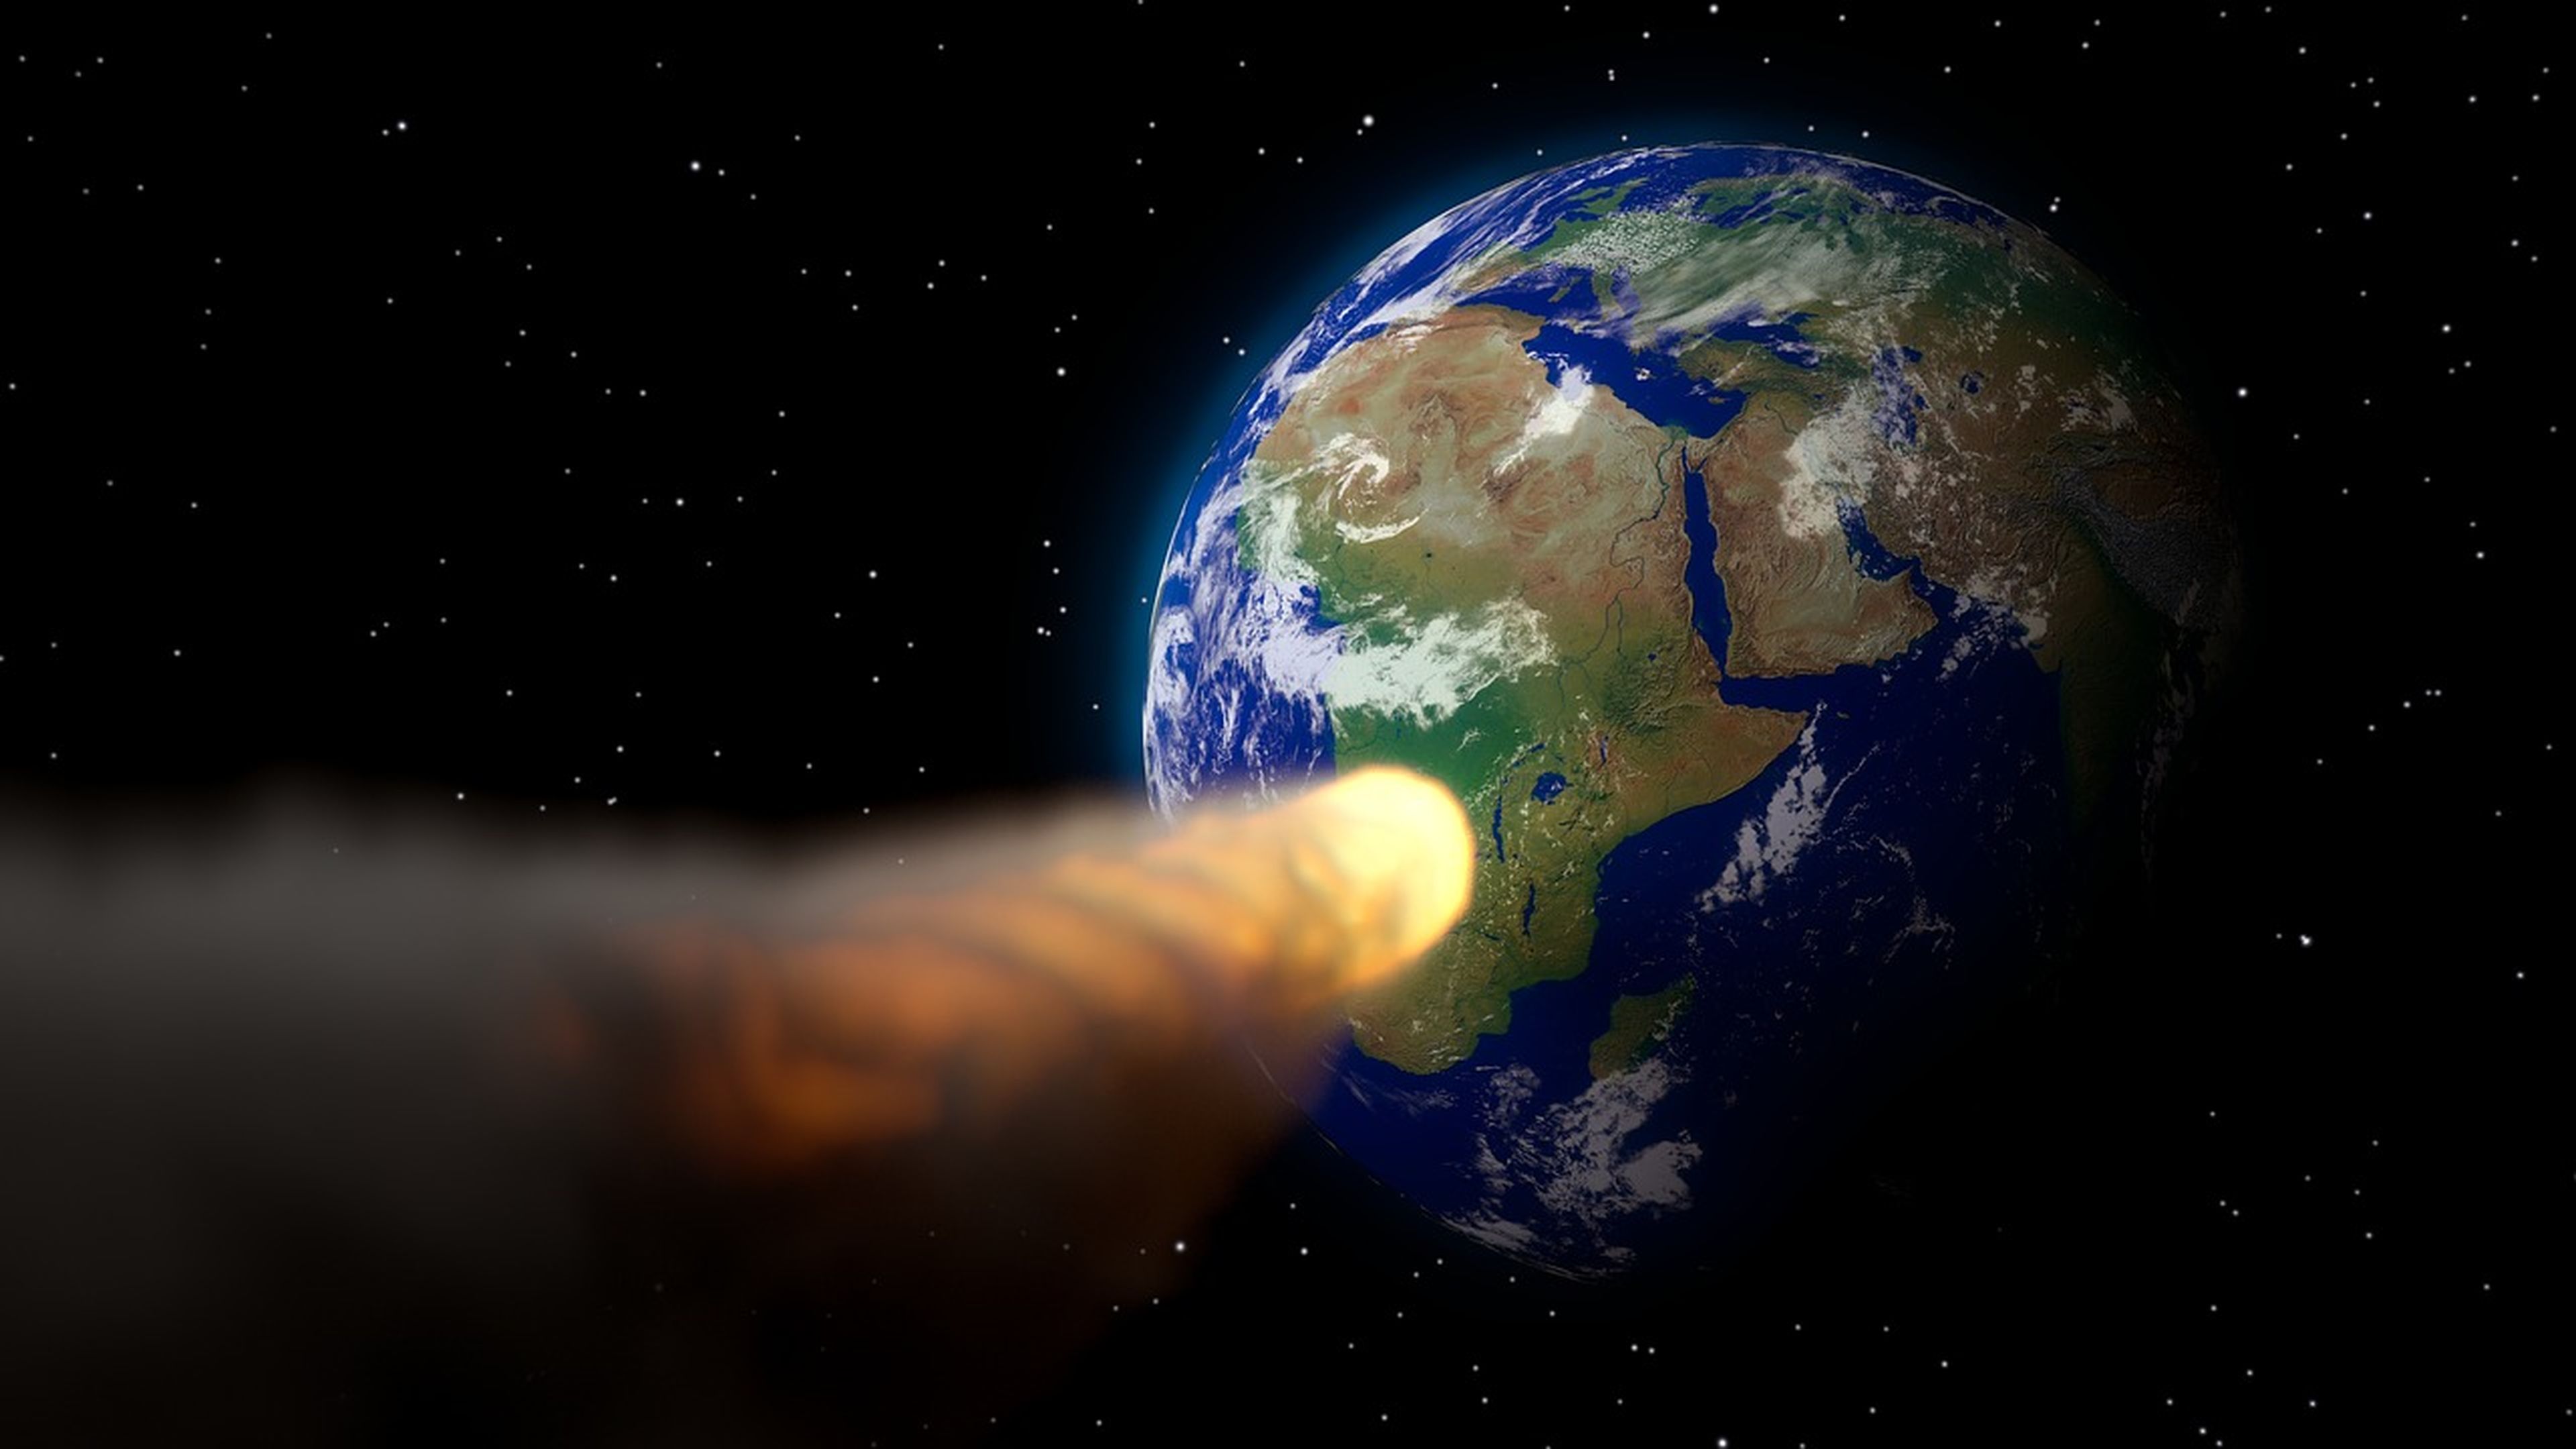 asteroide hacia la tierra